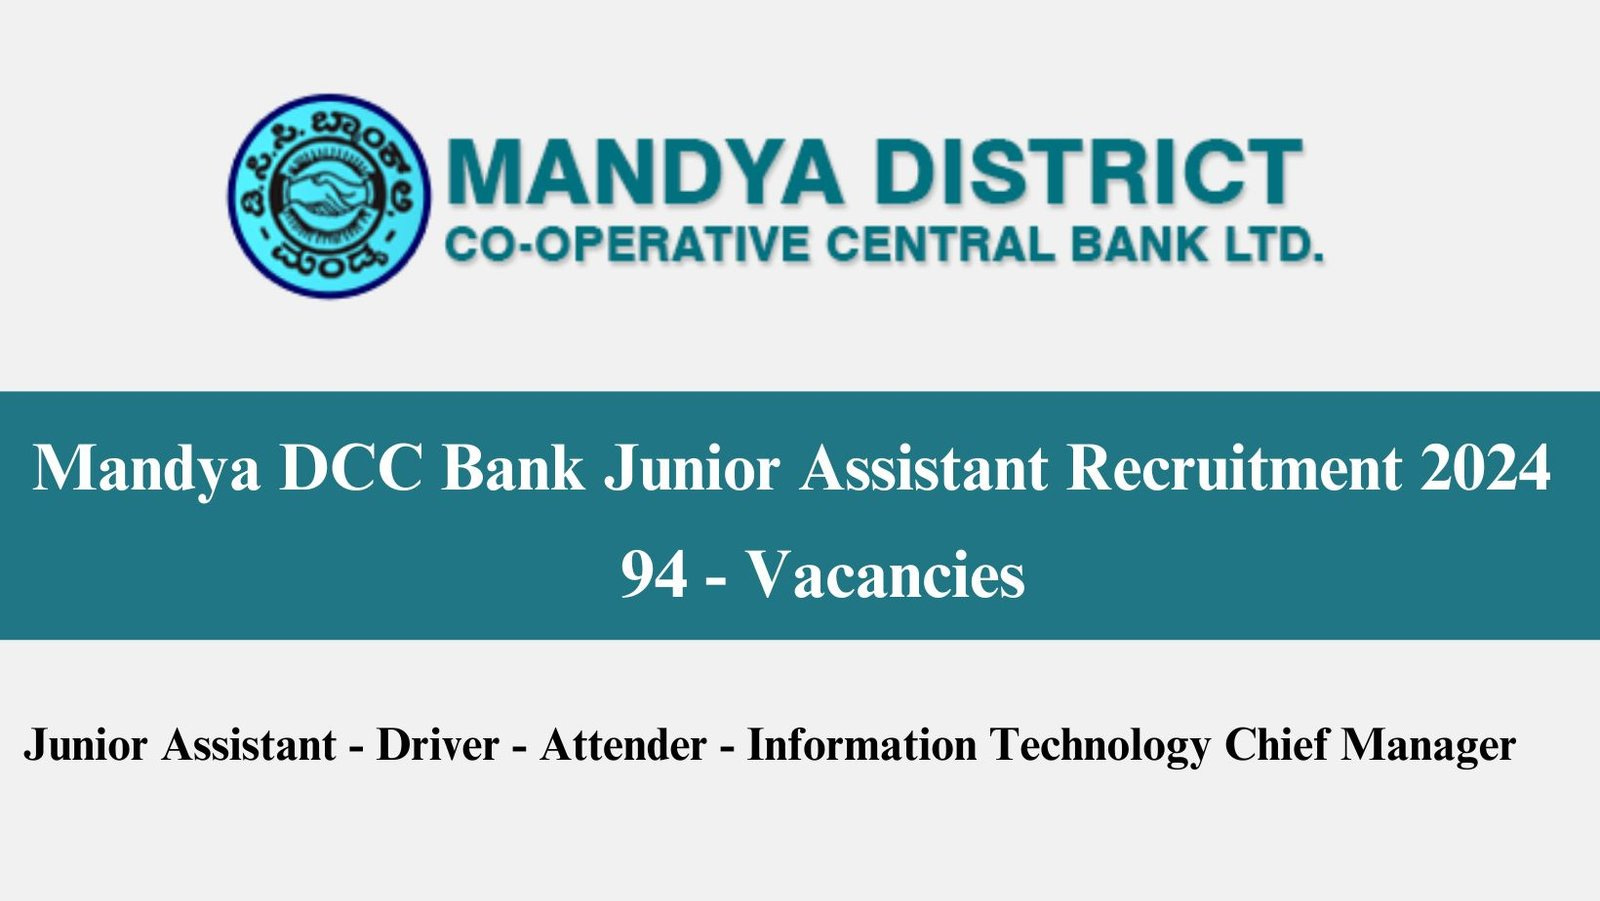 Mandya DCC Bank Junior Assistant Recruitment 2024